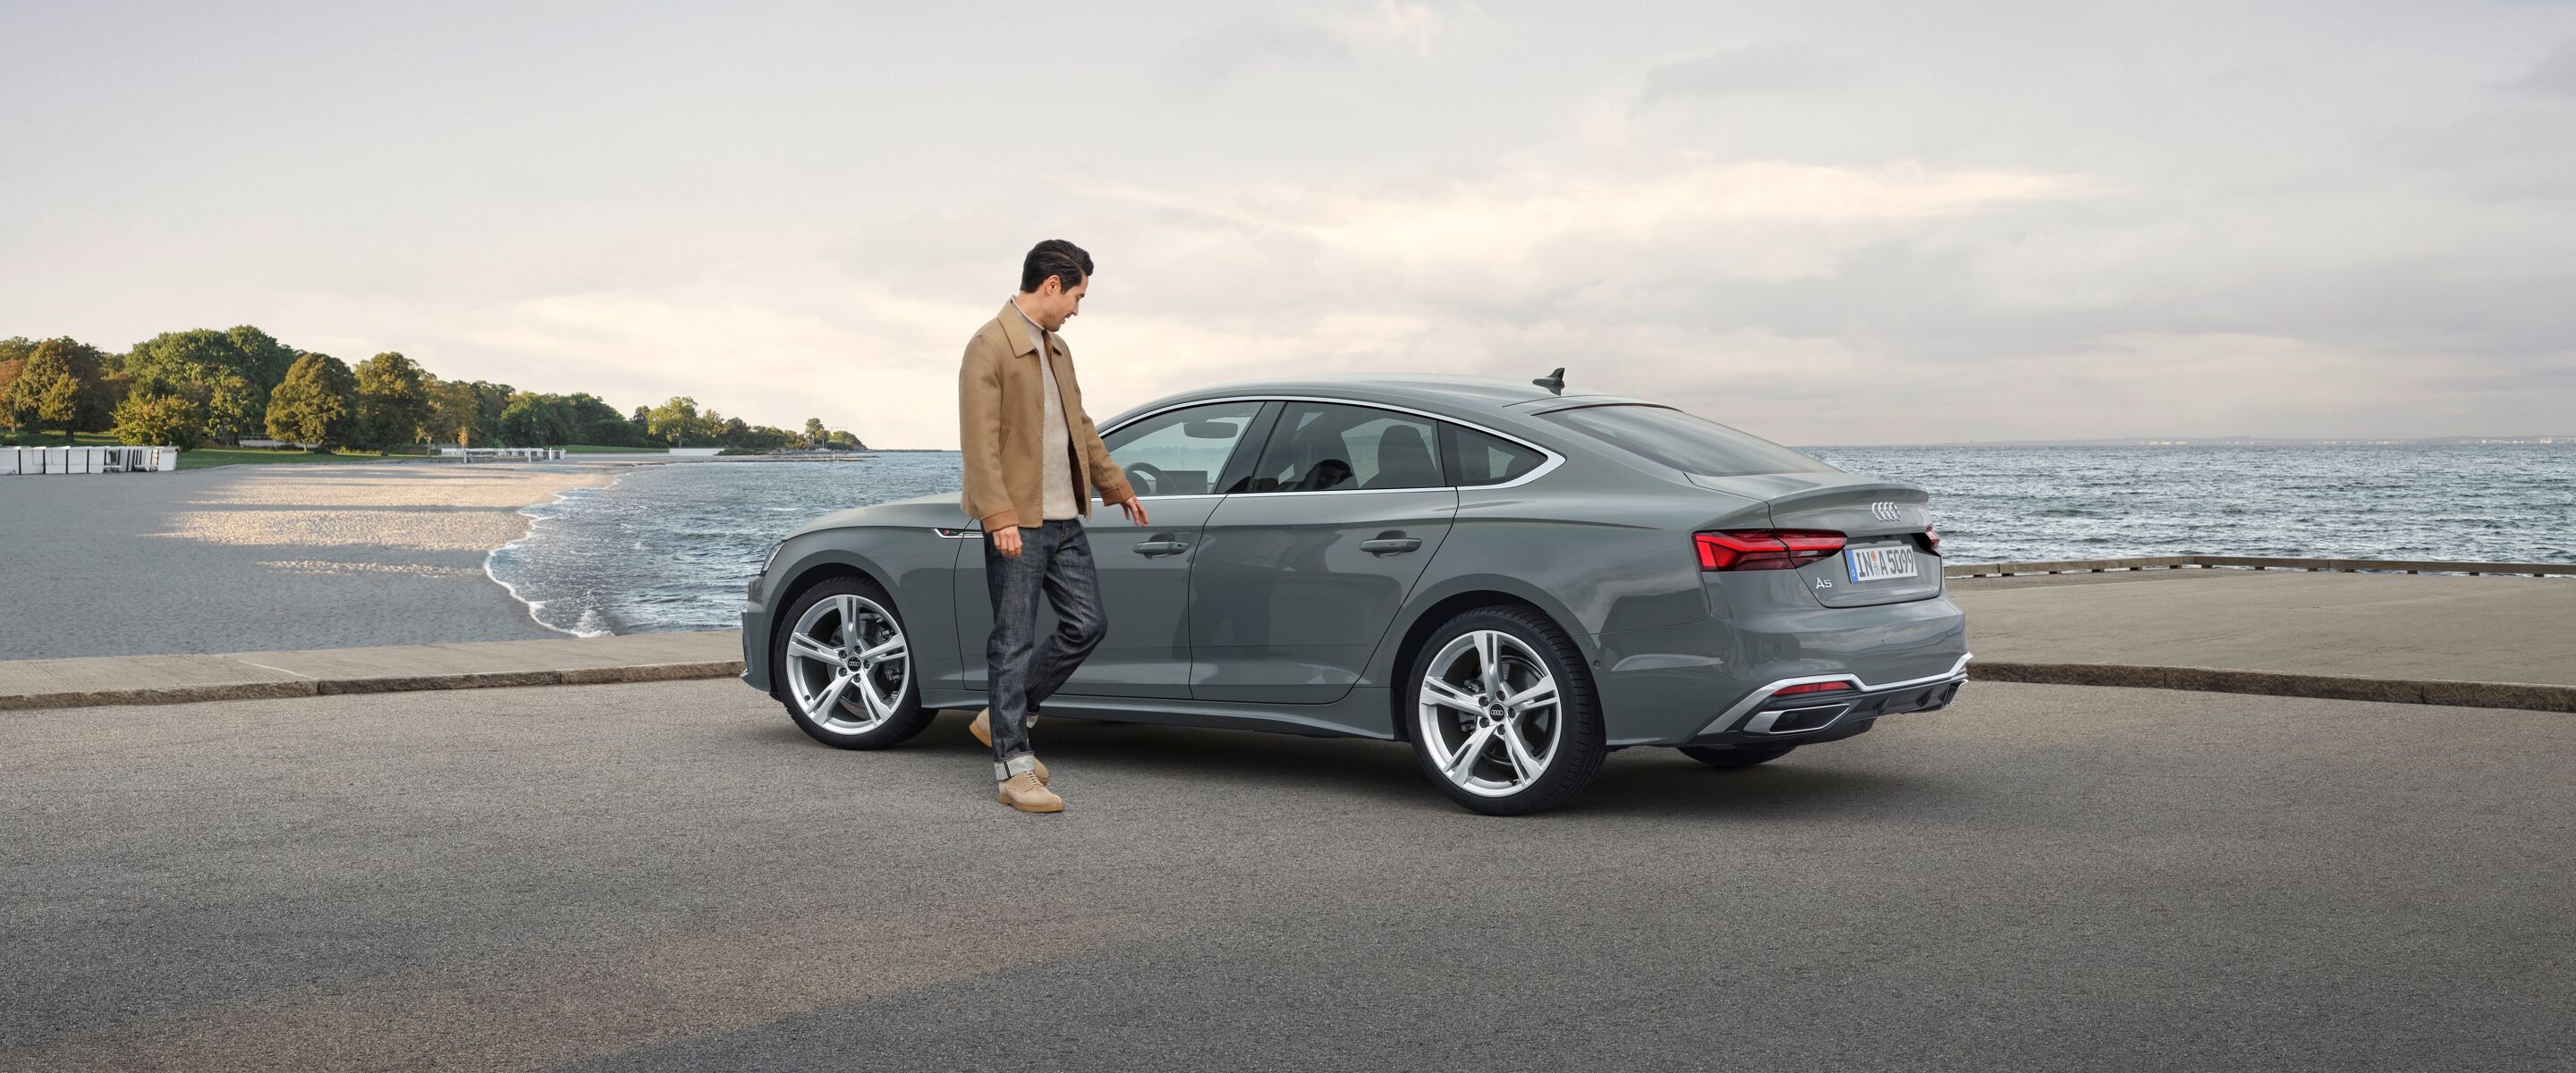 Met Audi Approved Import-occasions worden dromen werkelijkheid